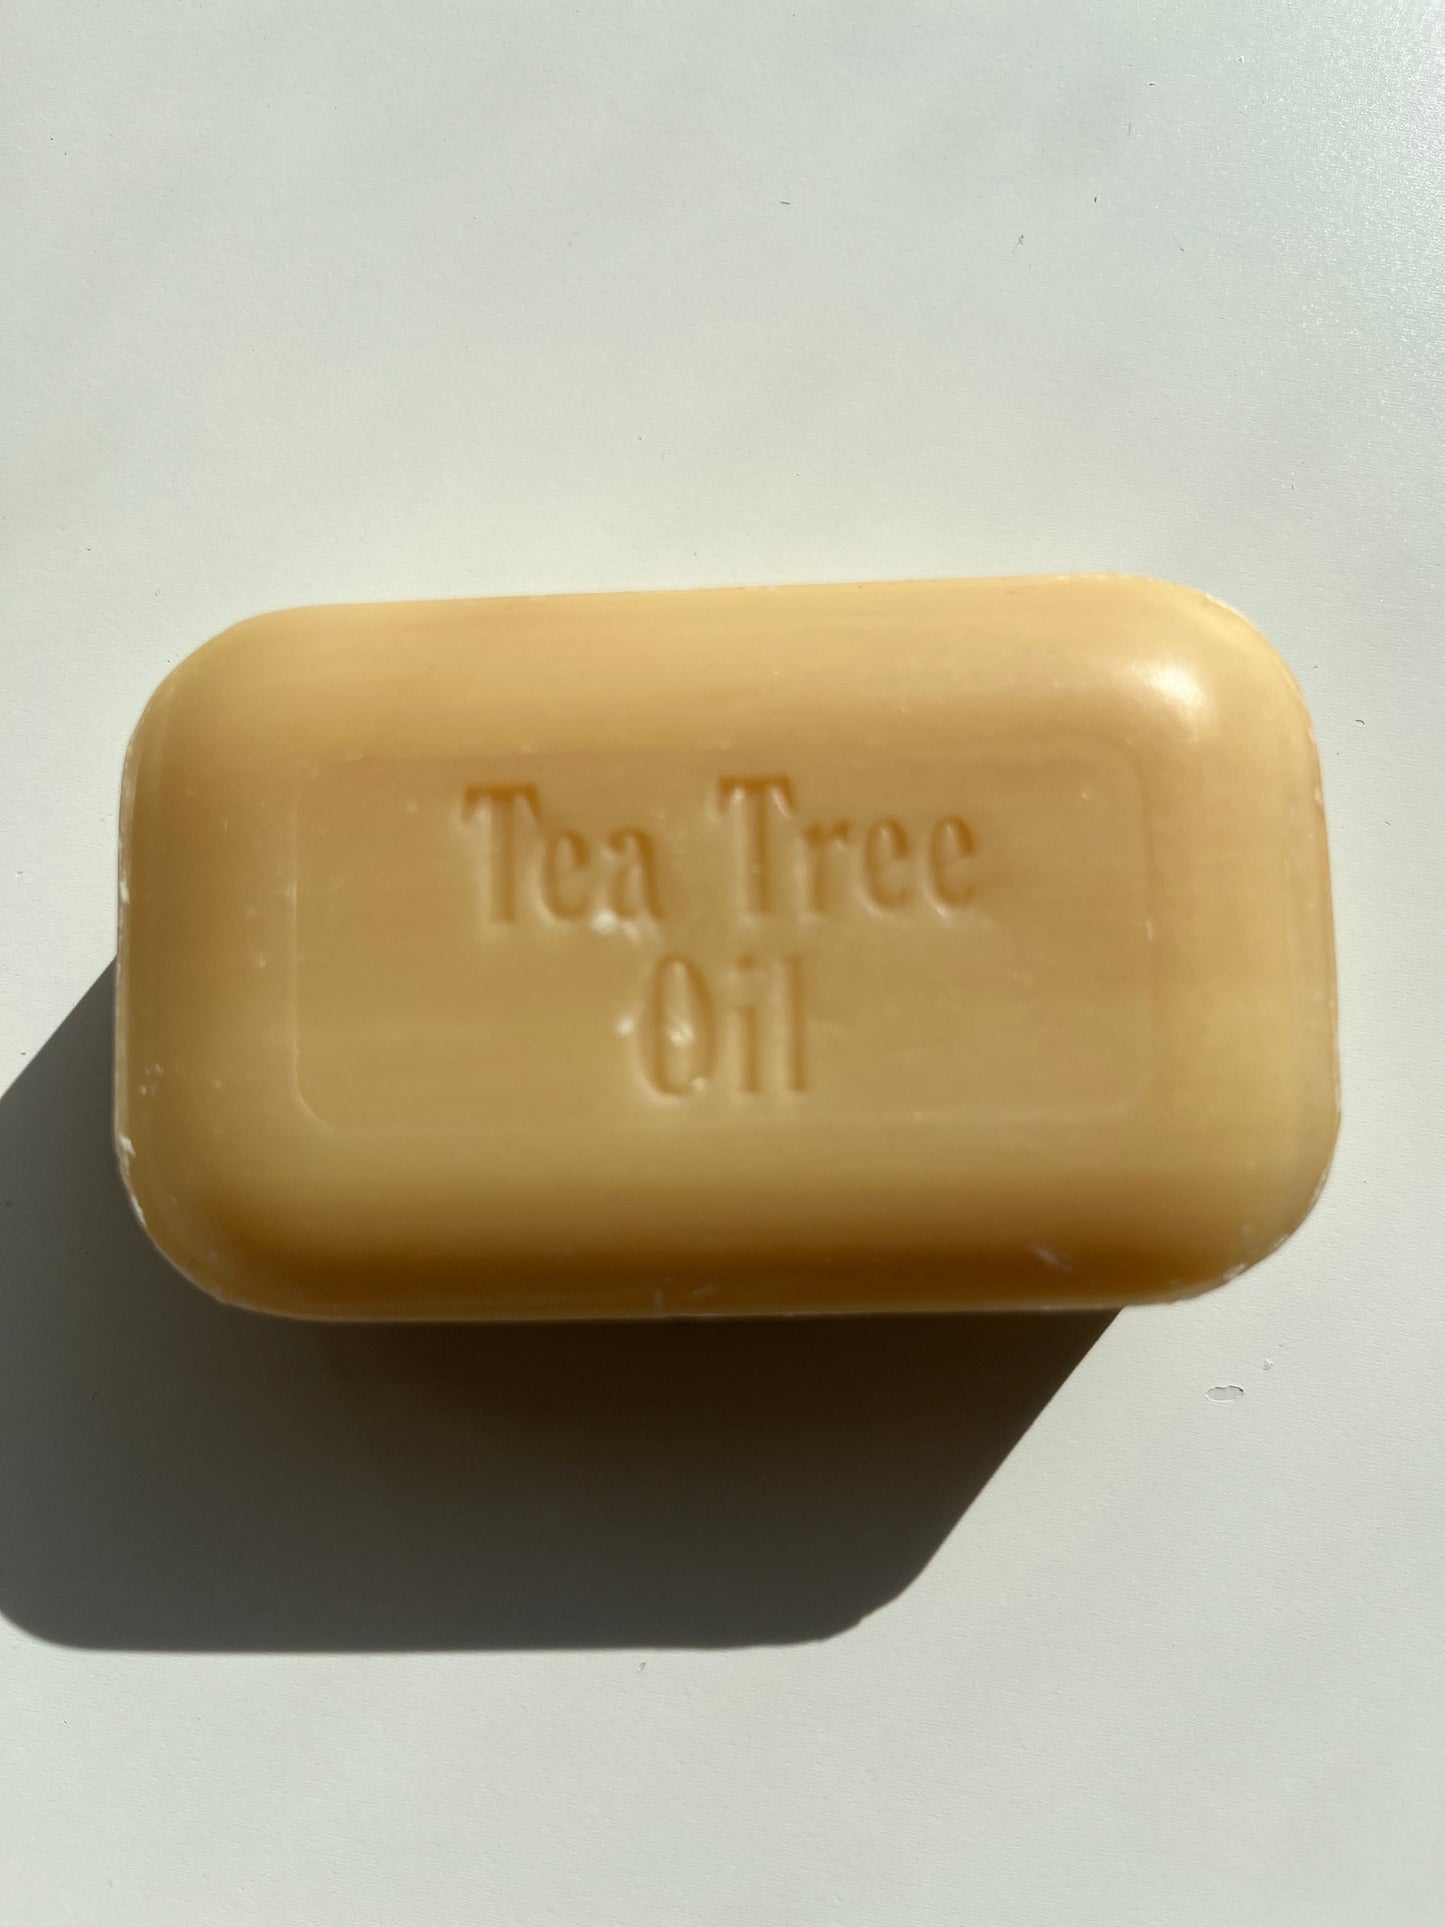 Tea Tree